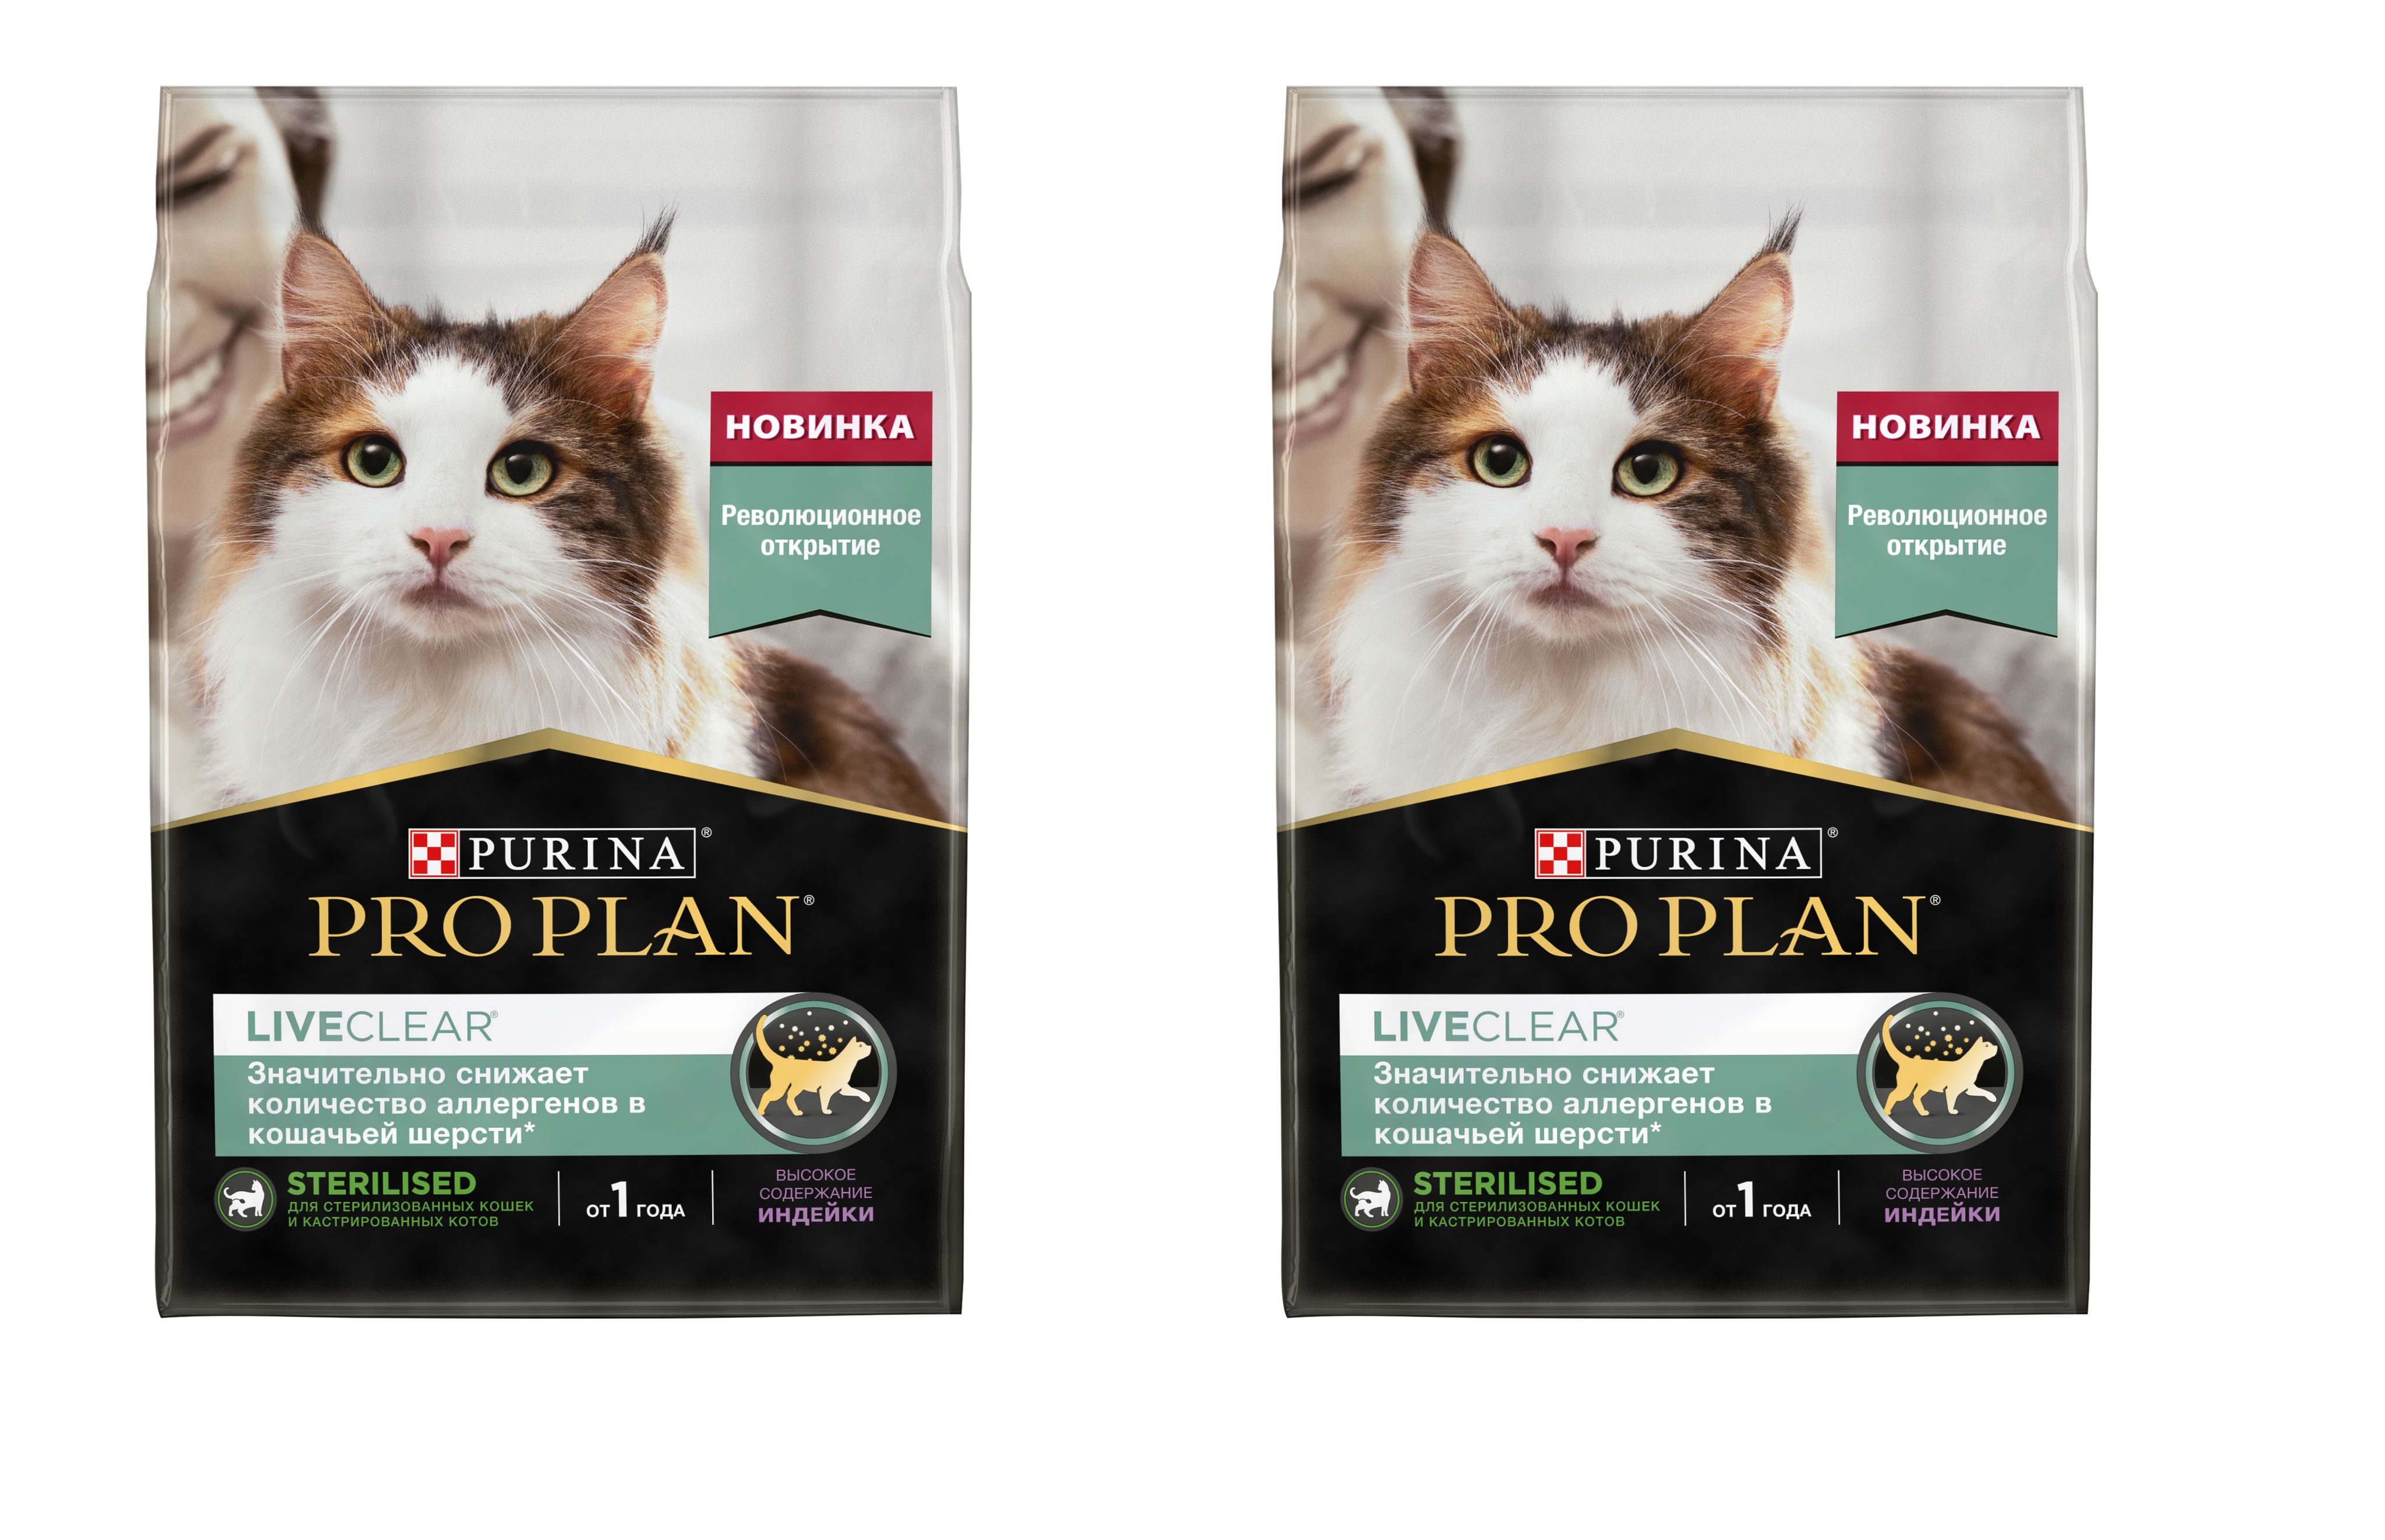 Корм purina pro plan liveclear. Проплан логотип. Корм для кошек для снижения аллергии в шерсти. Проплан Пурина с лососем с рыжим котом. Purina PROPLAN Baner.